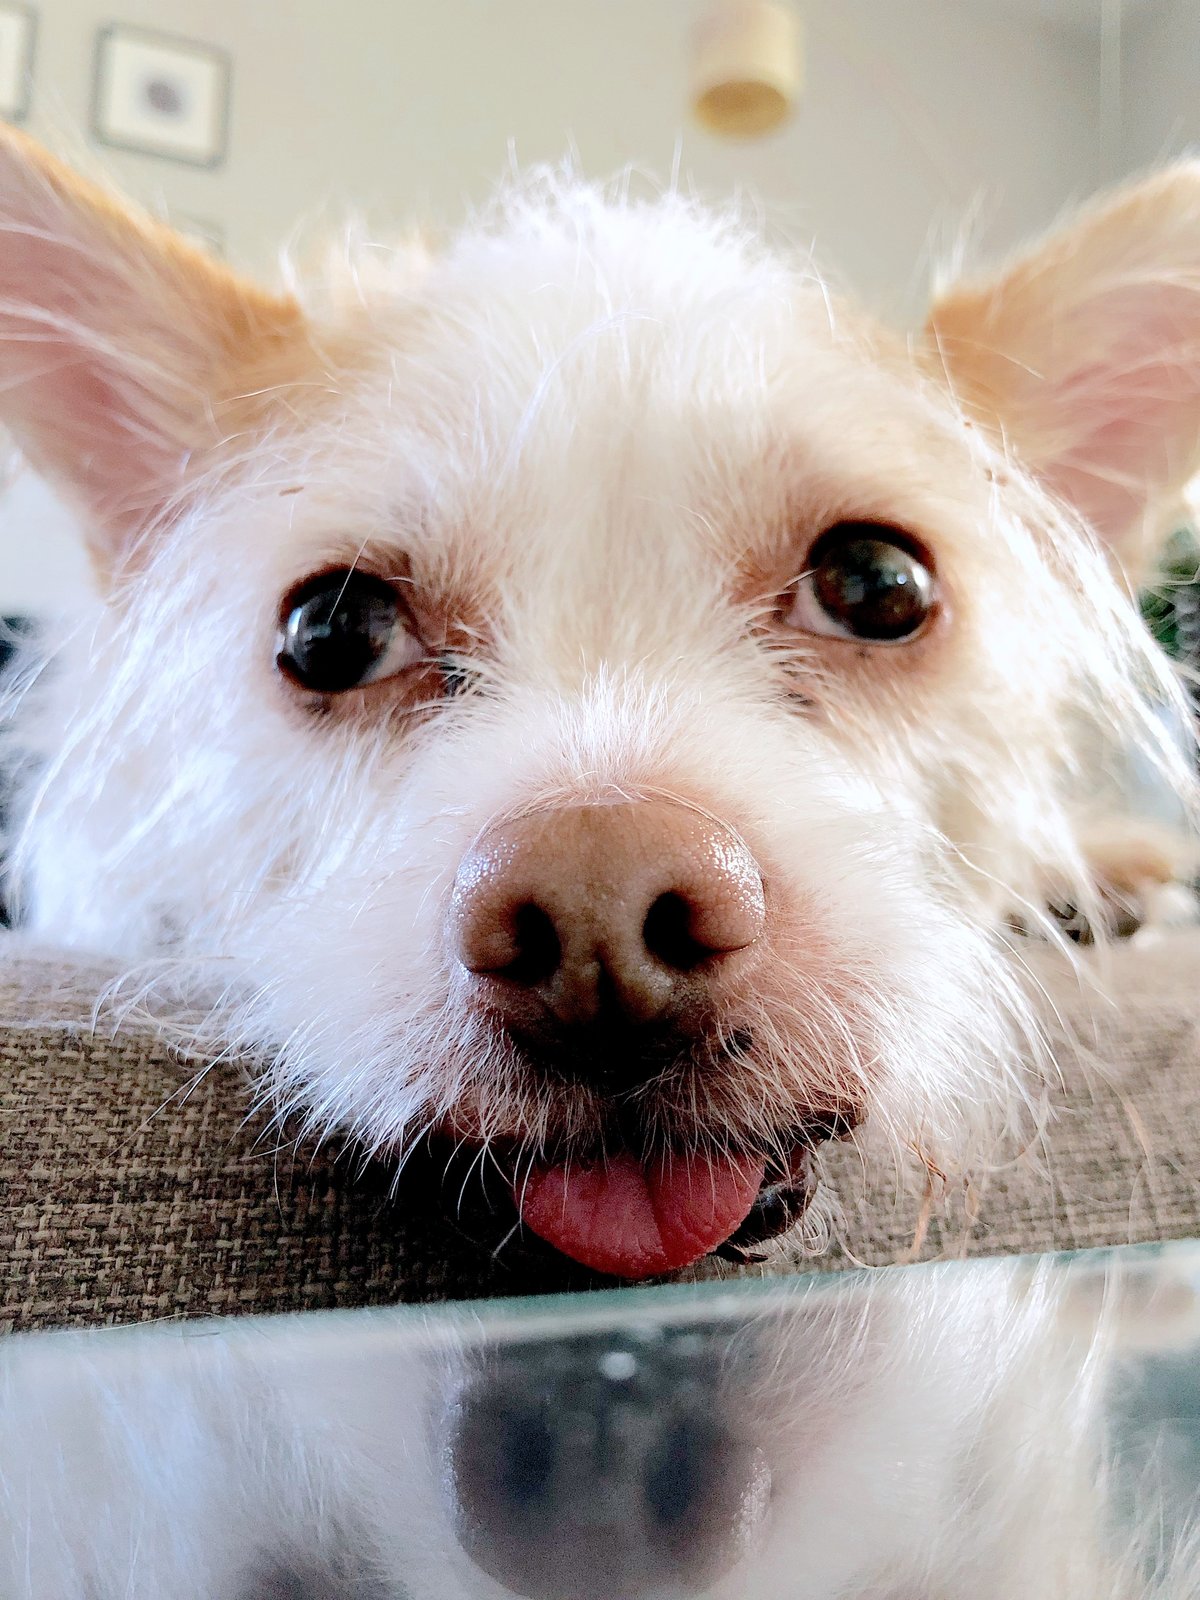 A dog sticks his tongue out at the camera